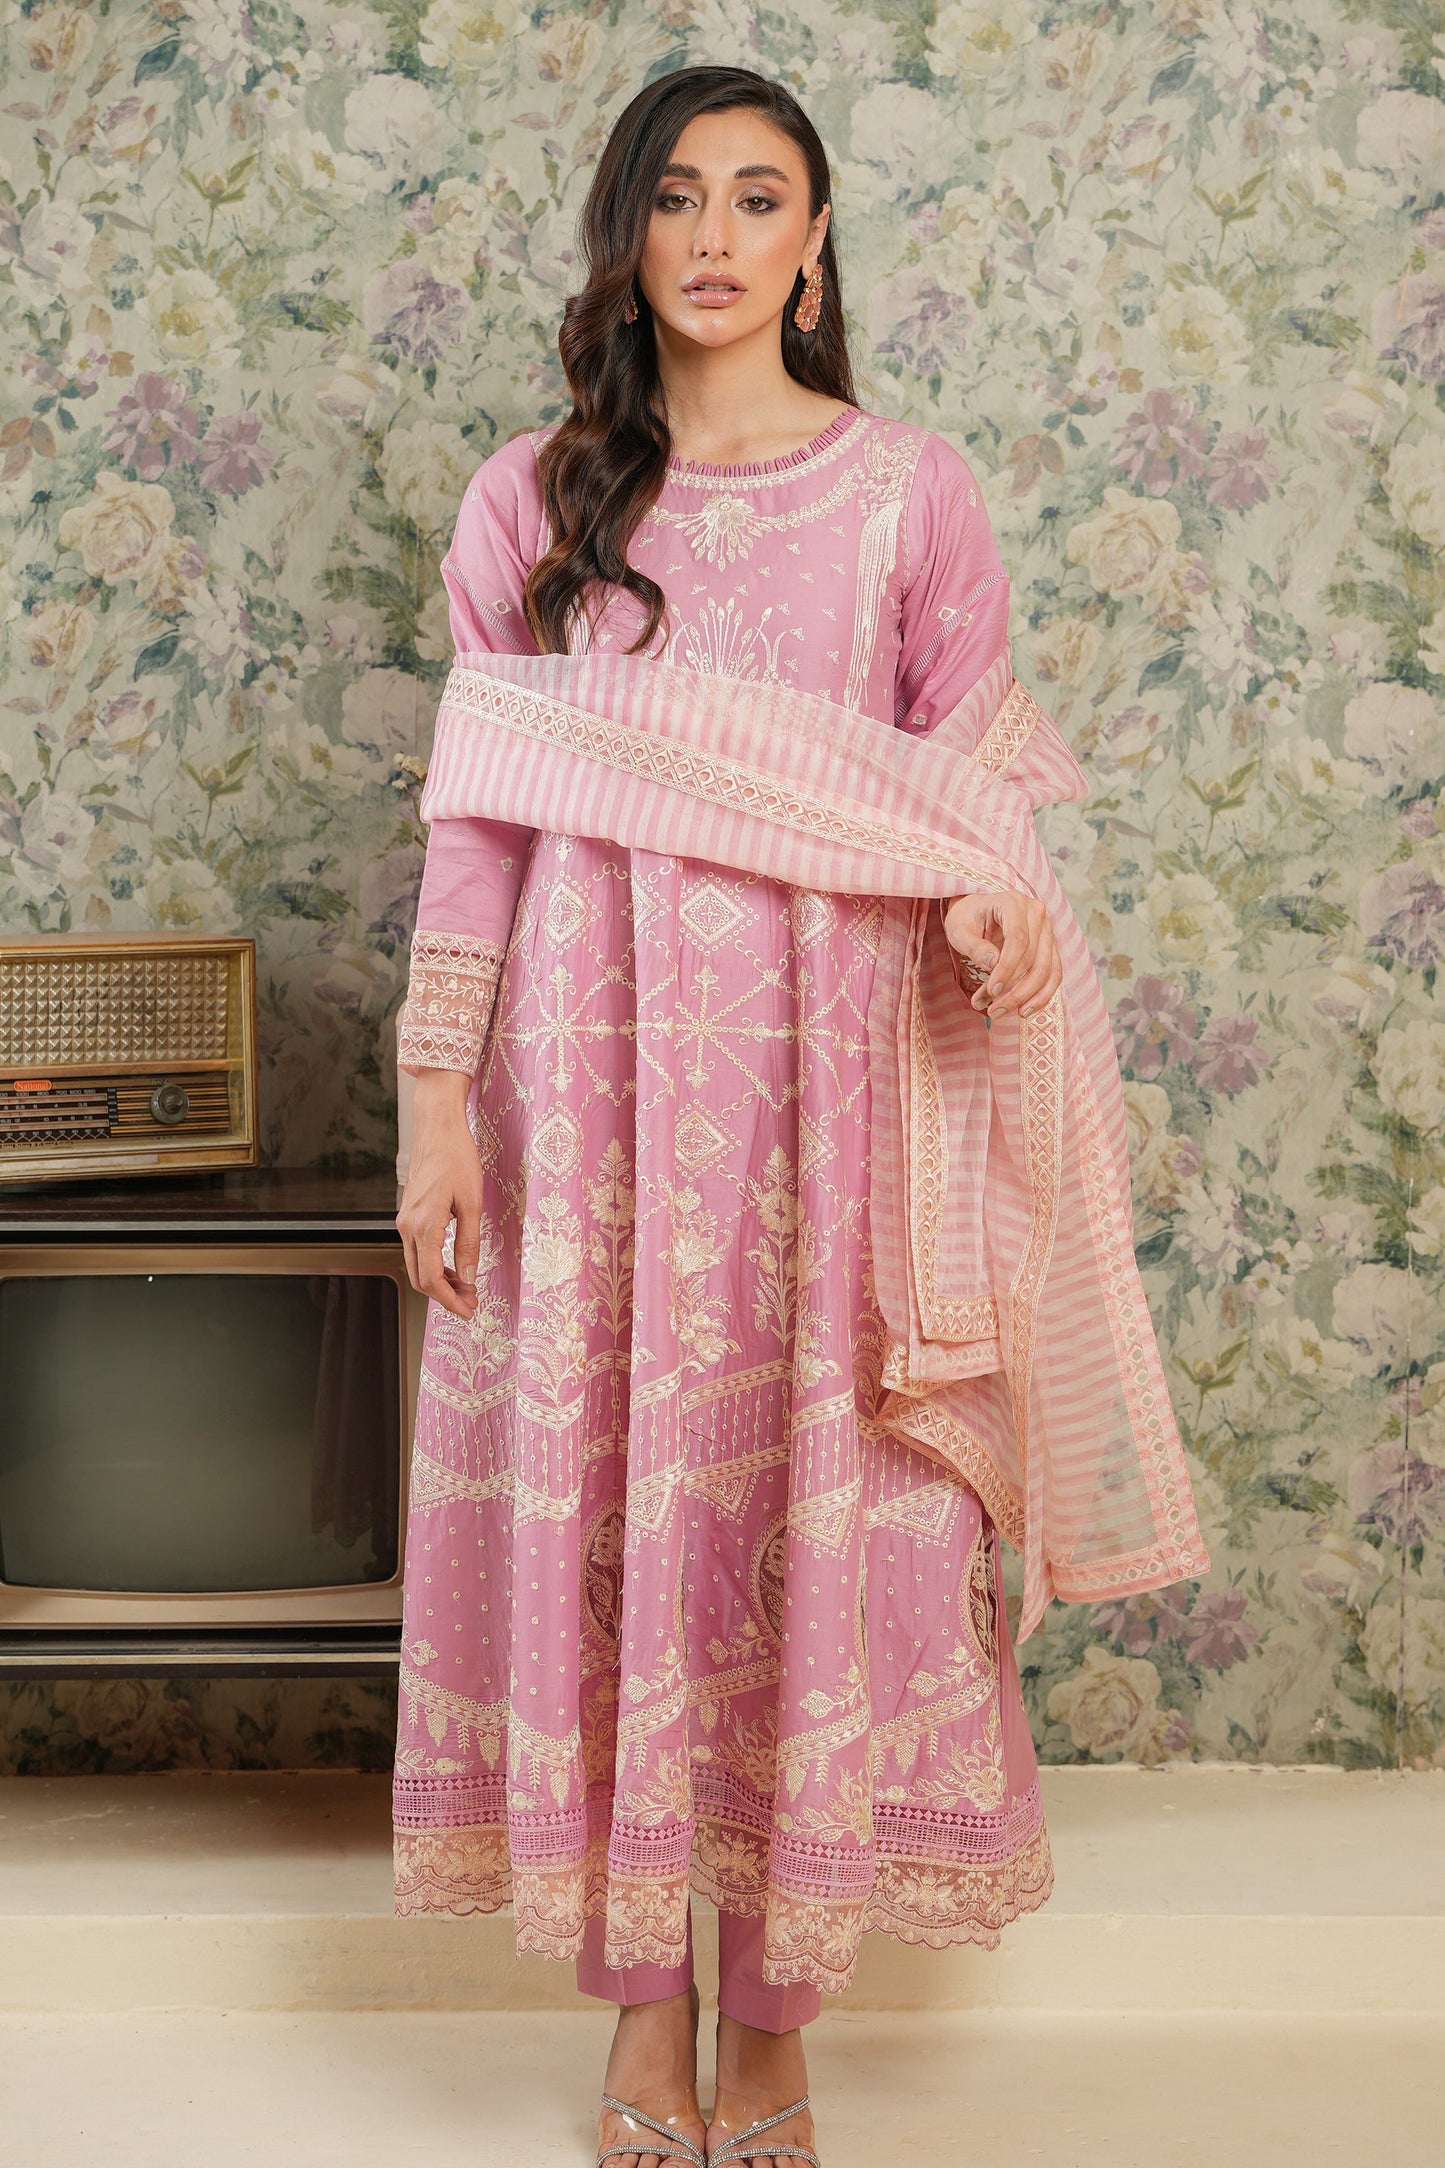 Shop Now - Gazania - Neelum - Eid Edit 2023 - Gisele - Shahana Collection UK - Wedding and Bridal Party Dresses